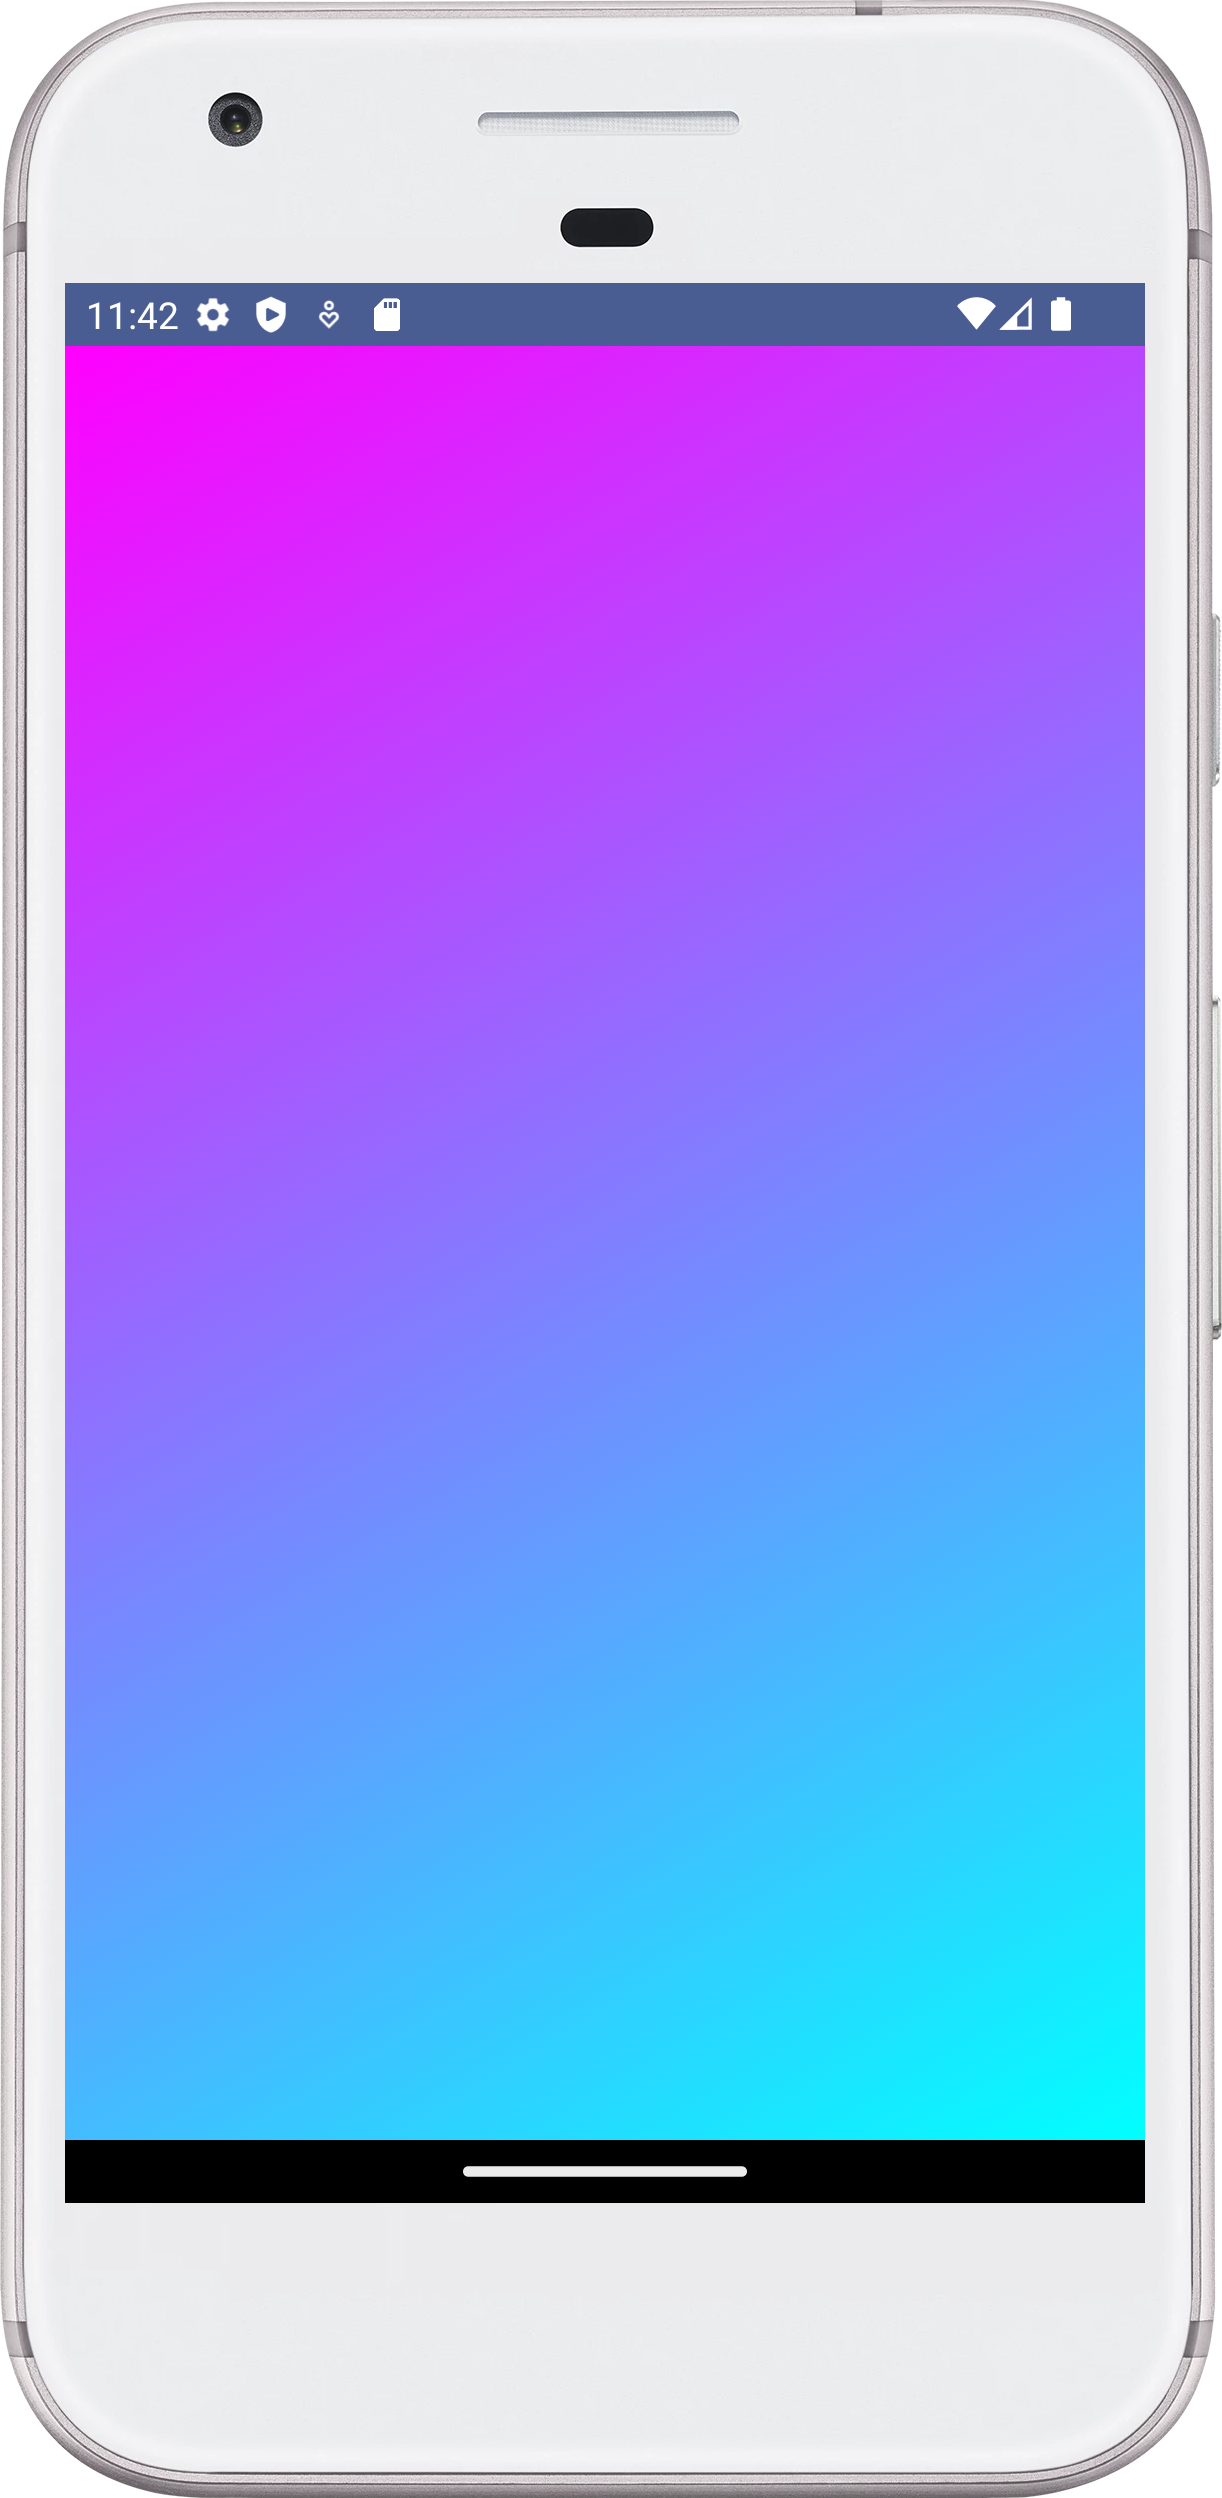 Gradient Background: Android Jetpack Compose - Đằng sau sự đẹp mắt của một ứng dụng hay một trang web, điều quan trọng nhất là phối màu ở đằng sau. Hãy khám phá hình ảnh liên quan đến phong cách thiết kế mới nhất của nền tảng Jetpack Compose để thể hiện sự đẳng cấp và chuyên nghiệp của bạn.